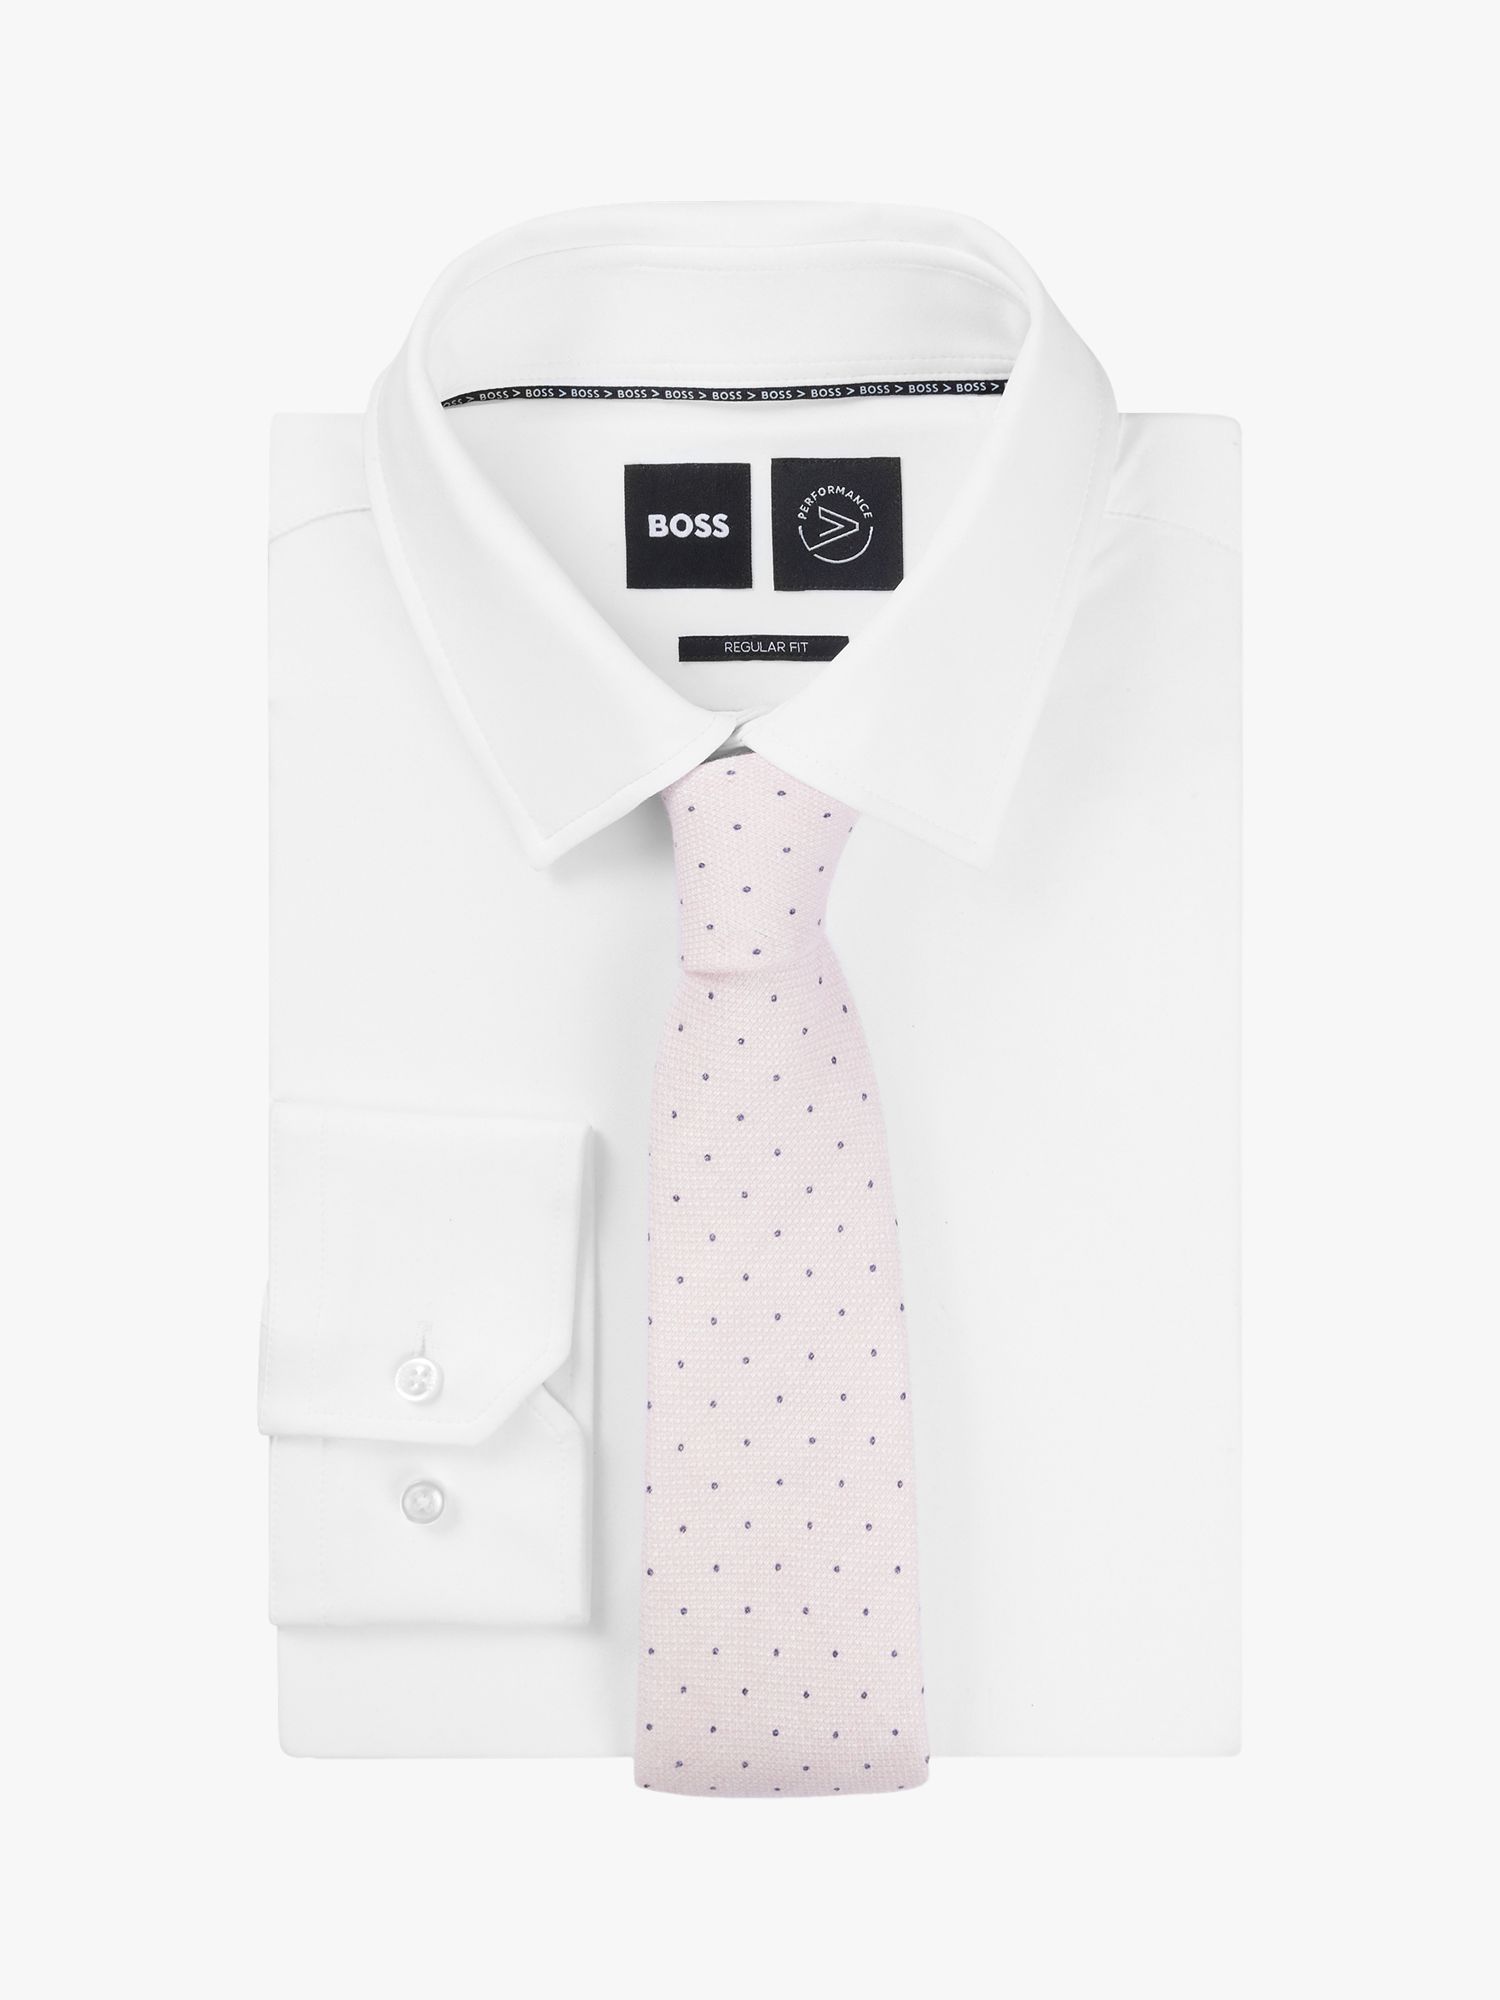 BOSS Linen Blend Tie, Light Pink, One Size